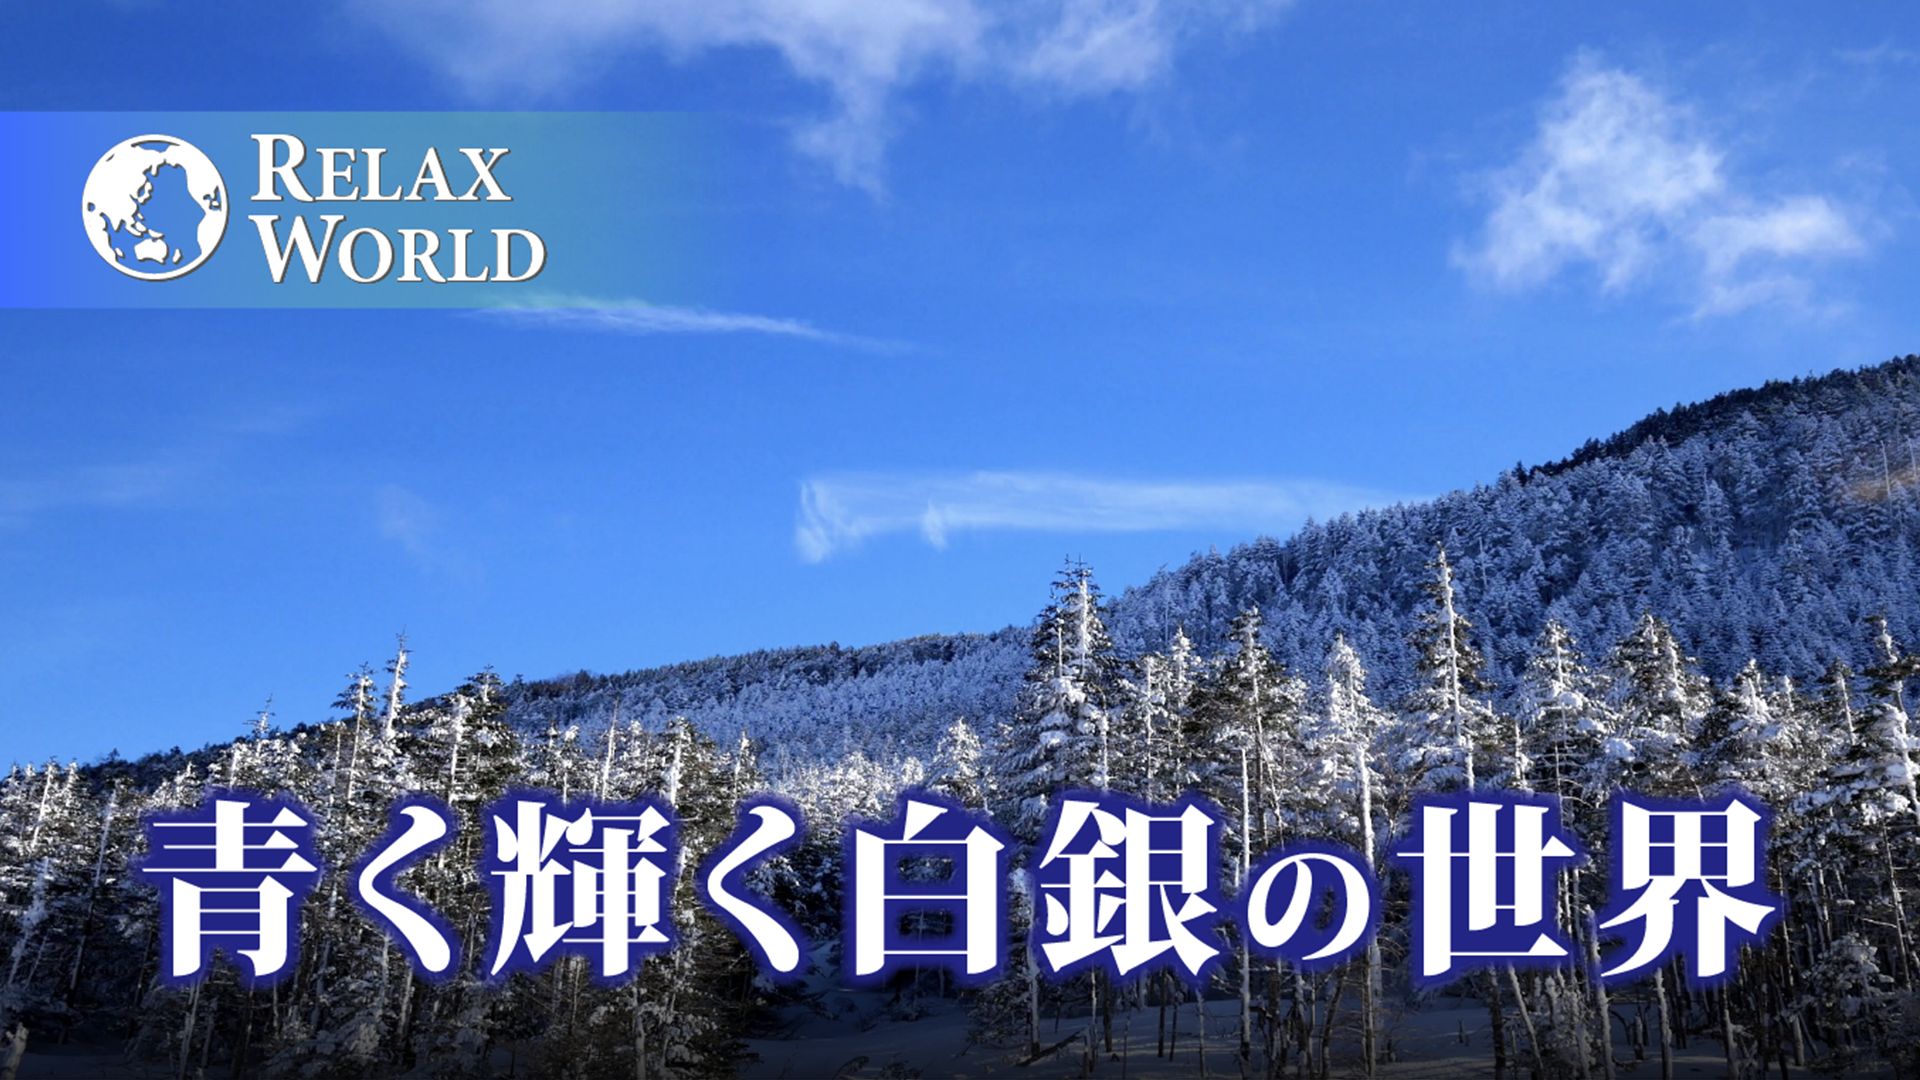 青く輝く白銀の世界【RELAX WORLD】